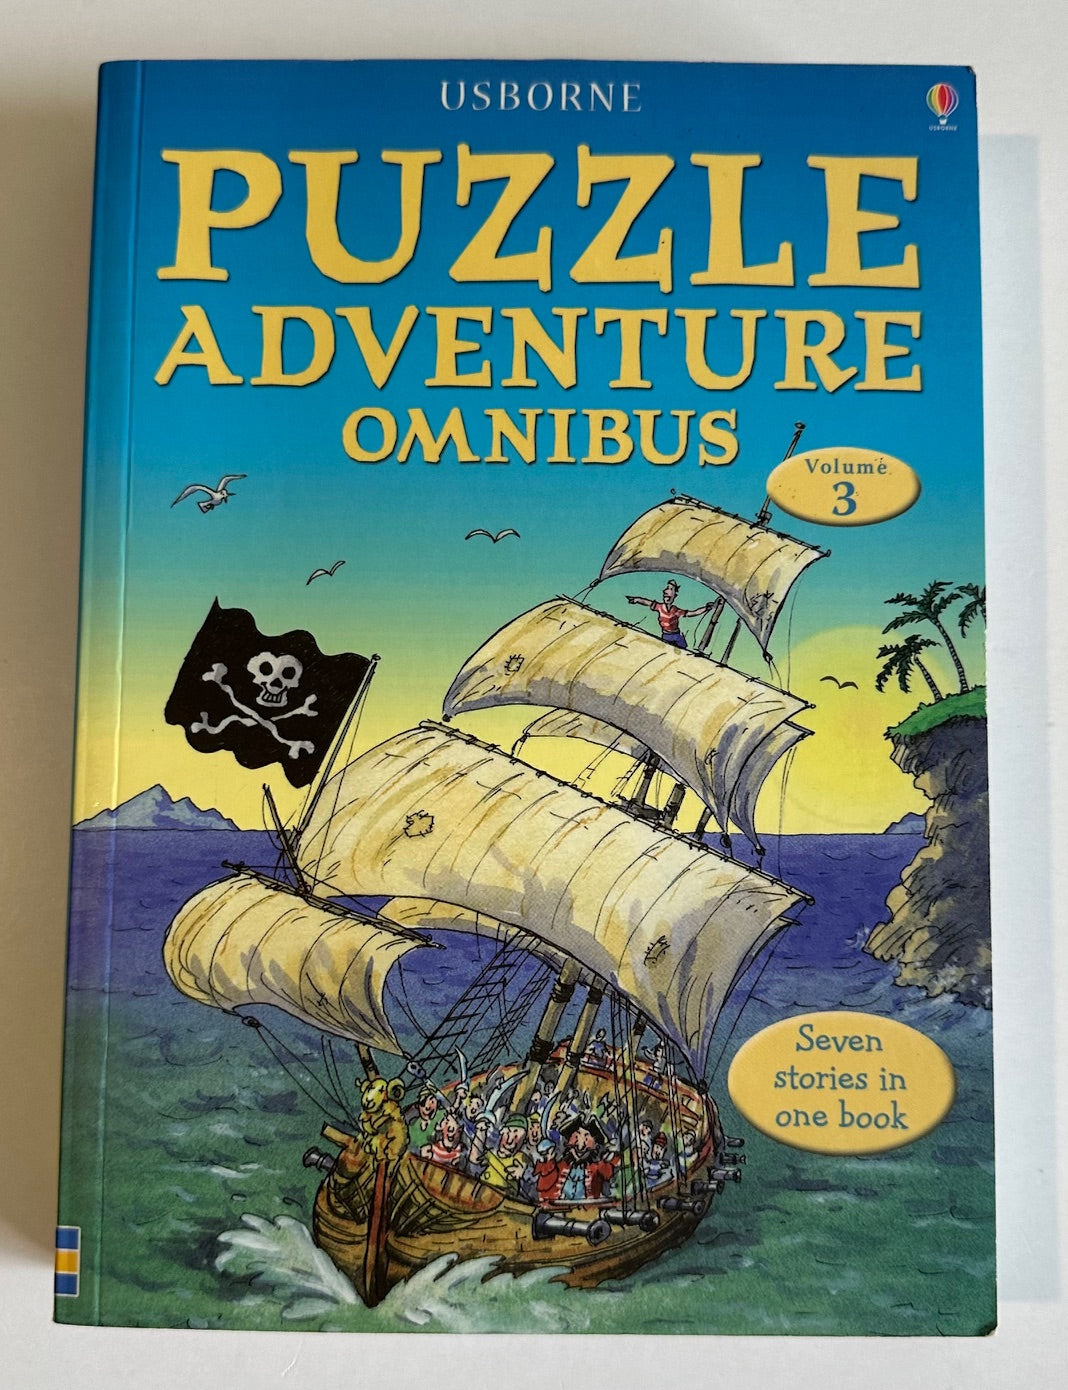 Usborne, "Puzzle Adventure Omnibus"